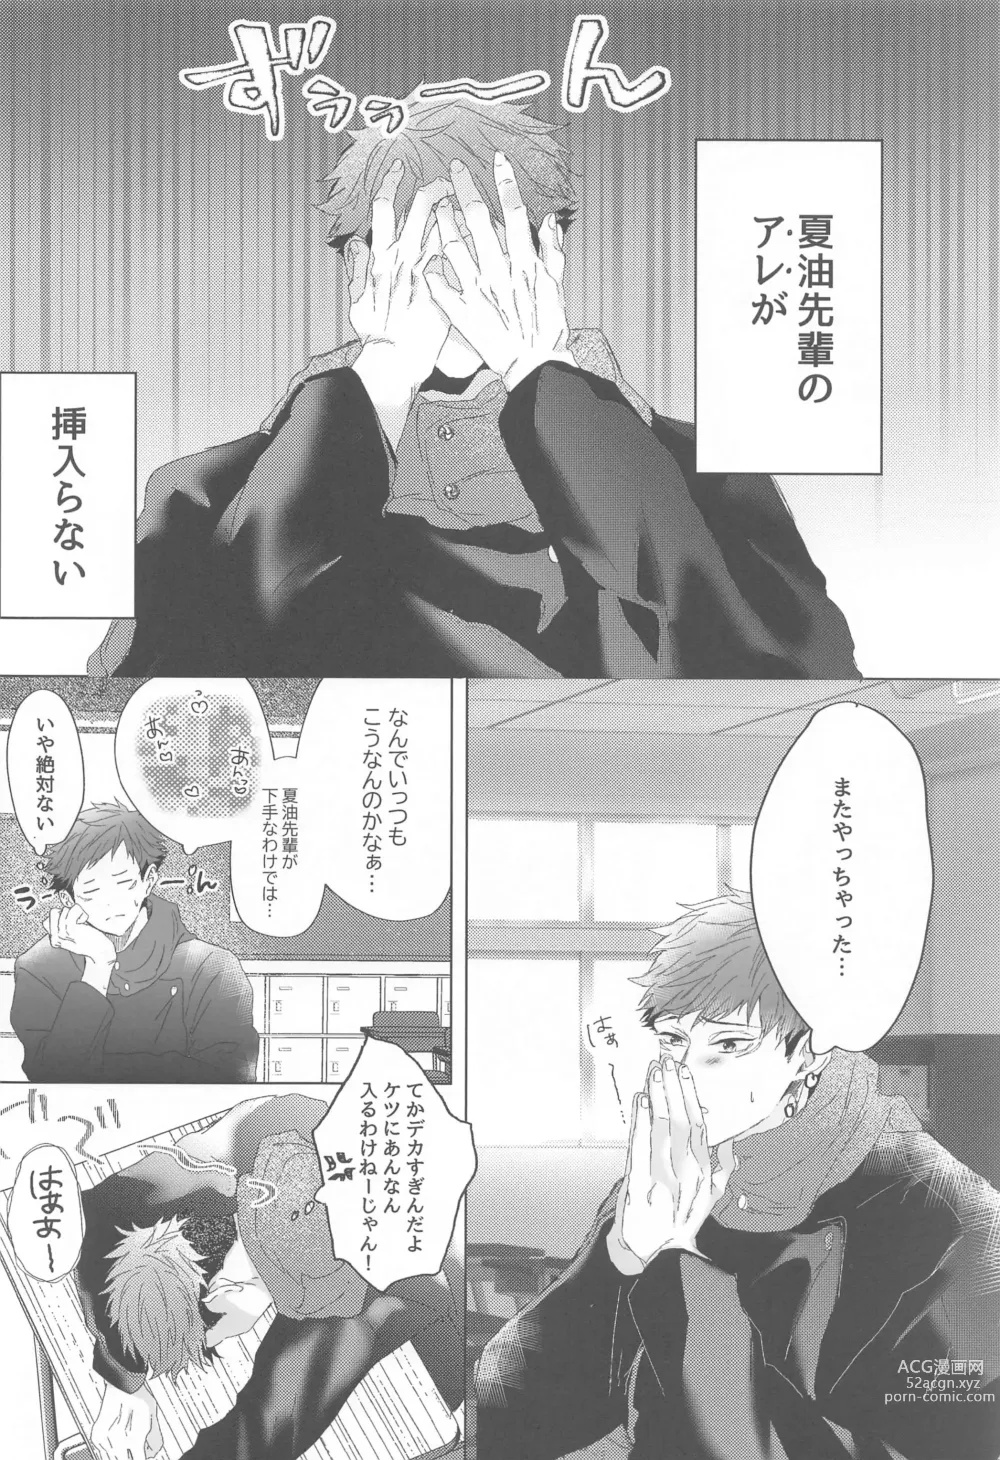 Page 7 of doujinshi Senpai, Anone.